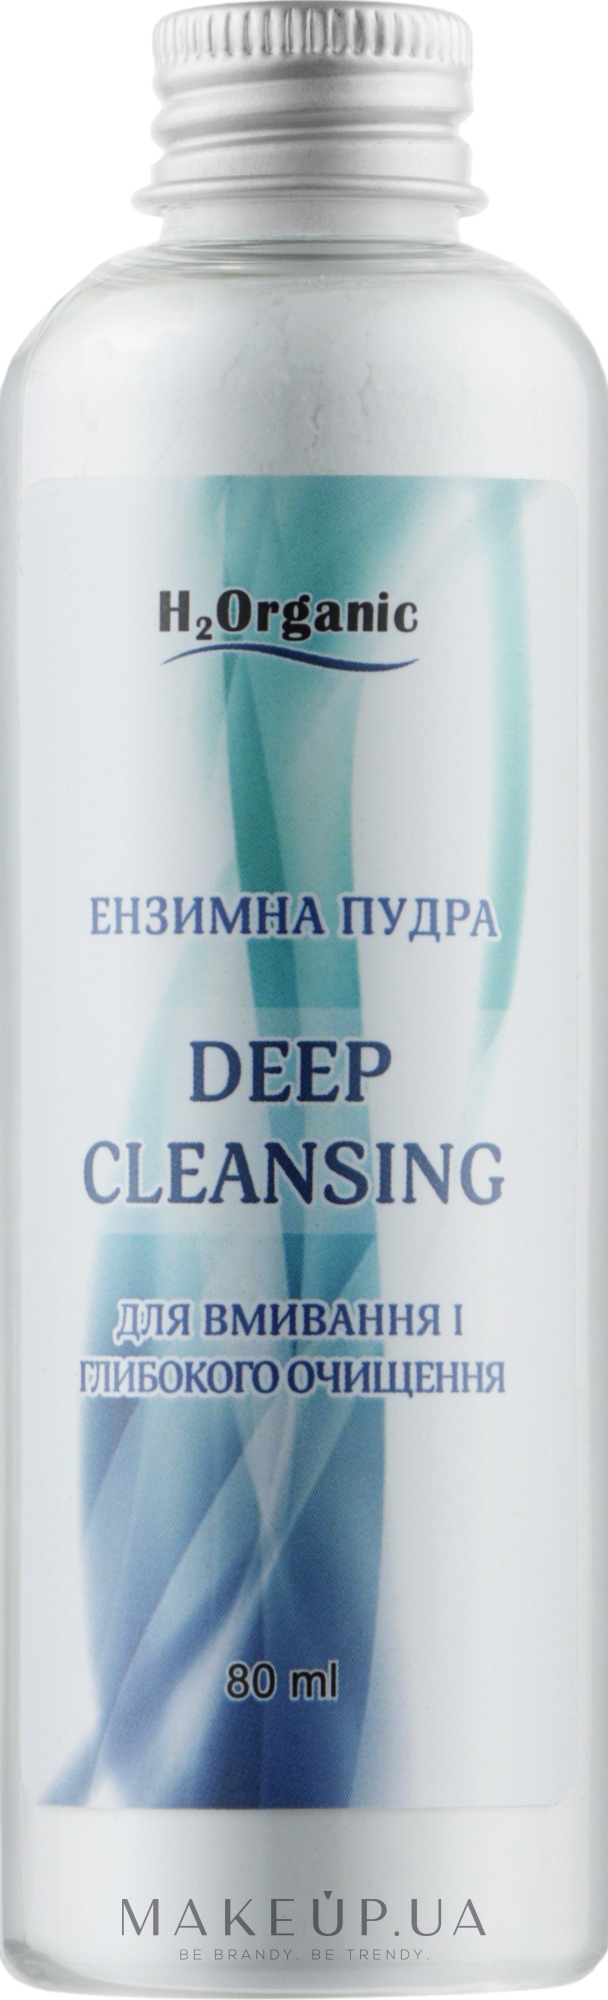 Энзимная пудра для умывания и глубокого очищения лица - H2Organic Deep Cleansing — фото 80ml